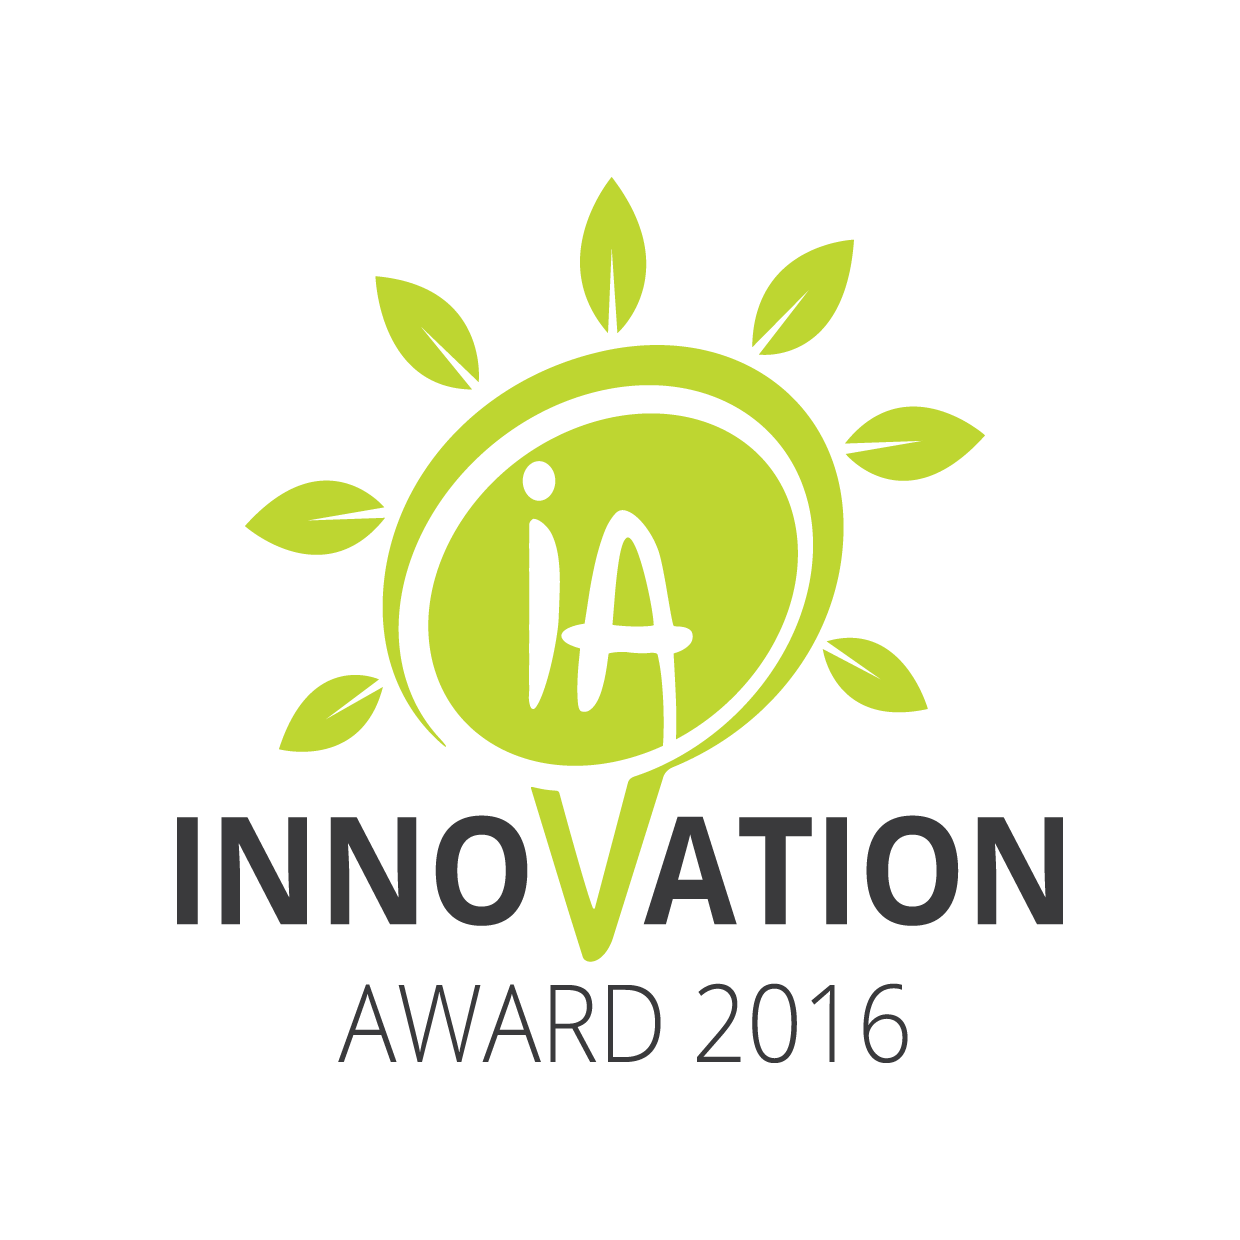 Innovation Award 2016